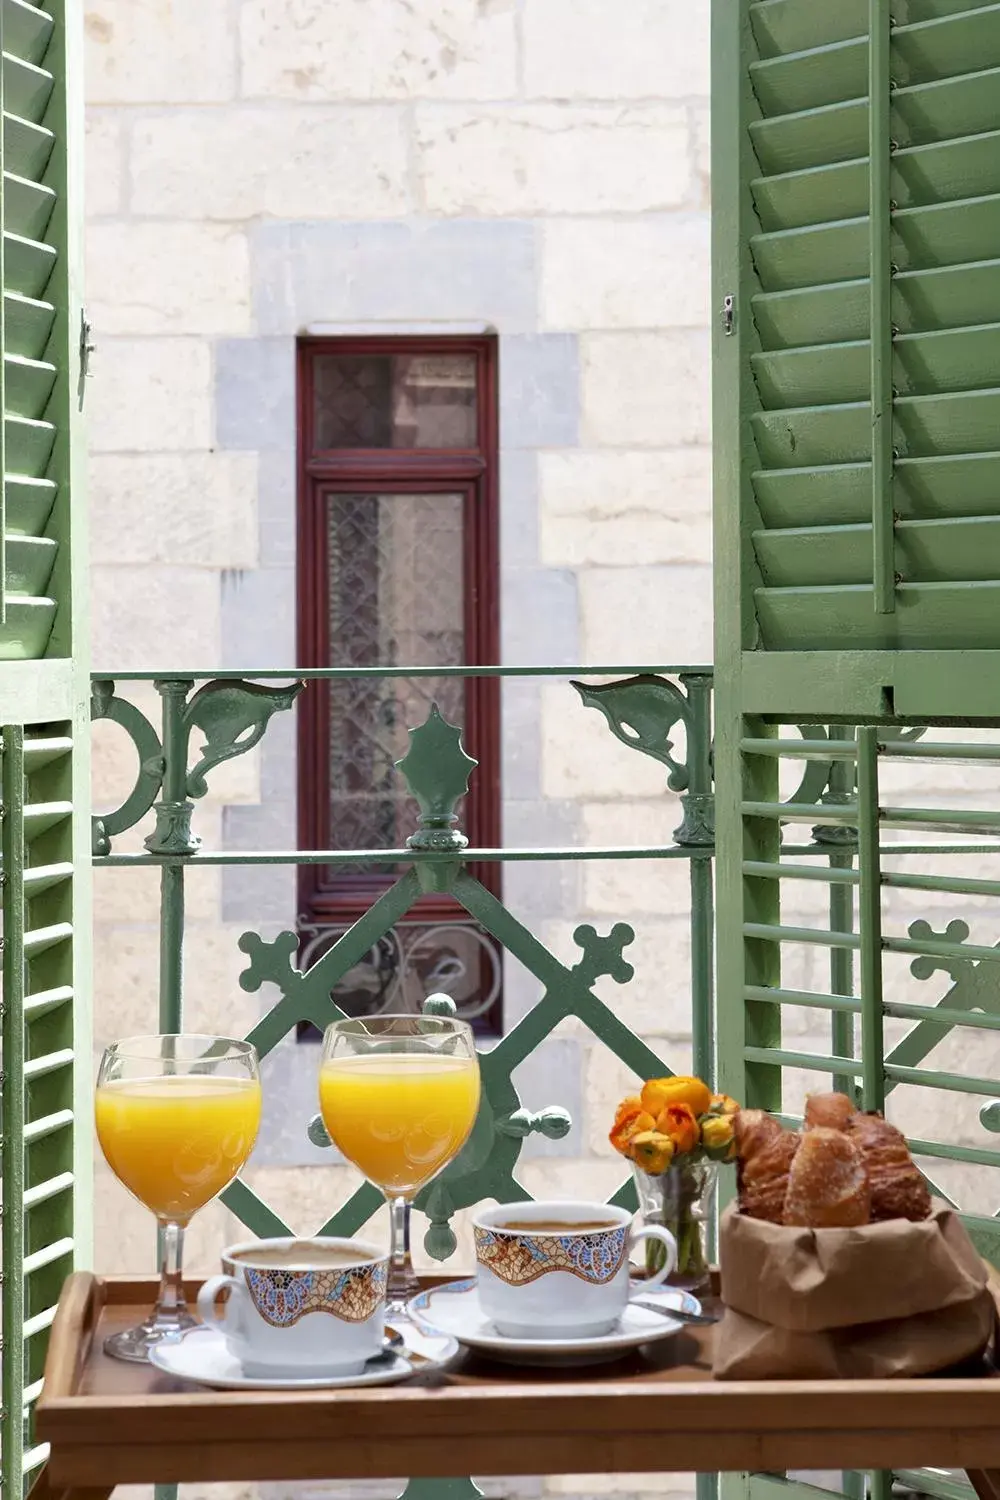 Balcony/Terrace in Gaudi Hotel